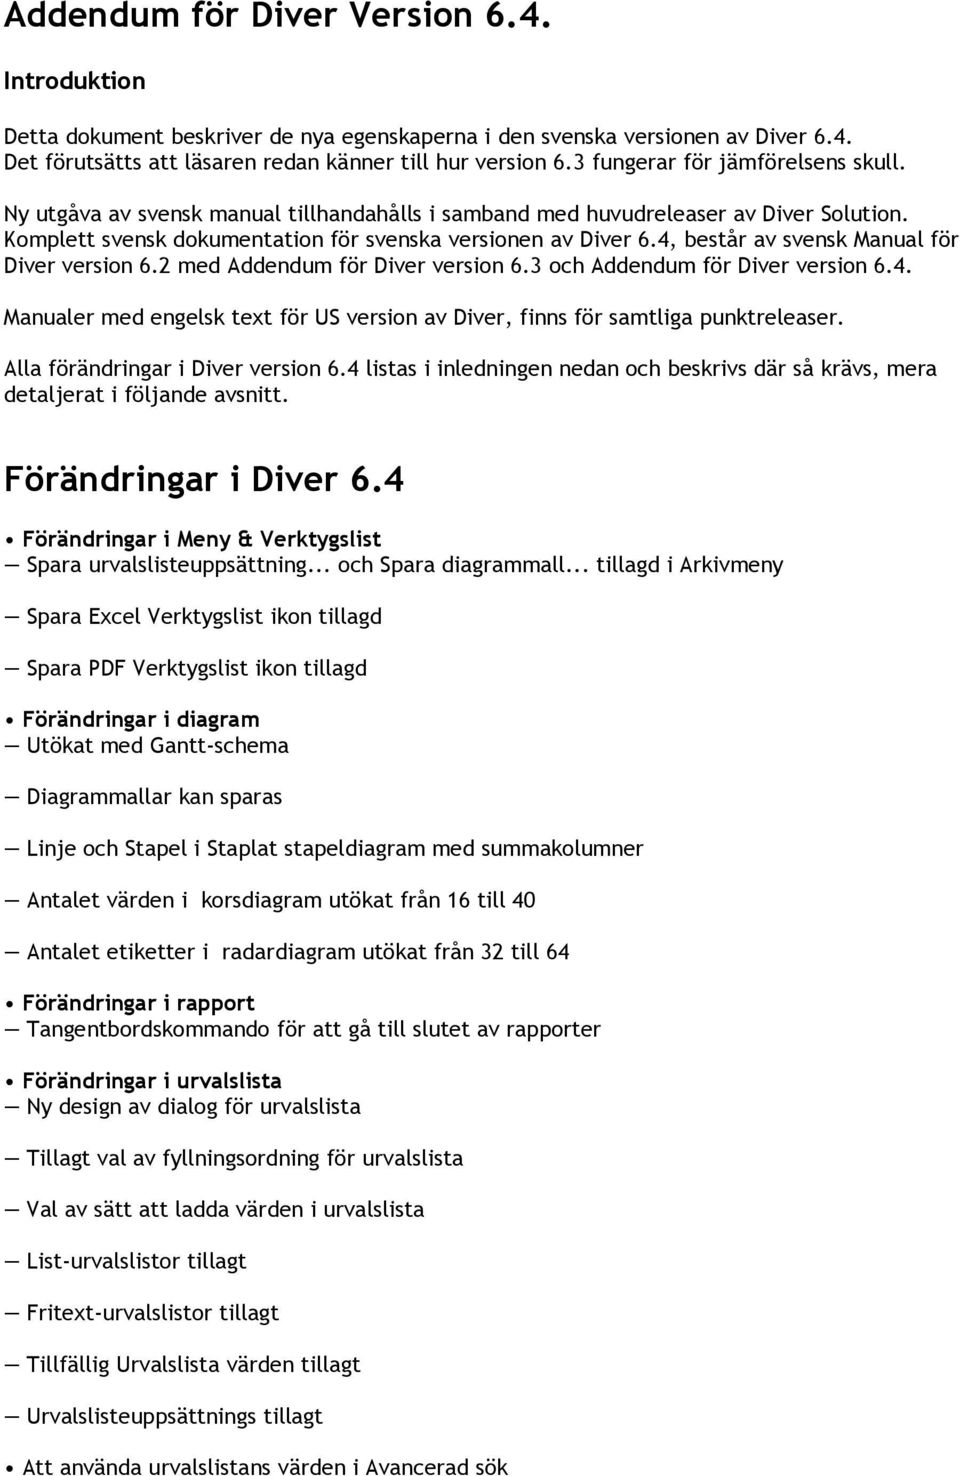 4, består av svensk Manual för Diver version 6.2 med Addendum för Diver version 6.3 och Addendum för Diver version 6.4. Manualer med engelsk text för US version av Diver, finns för samtliga punktreleaser.